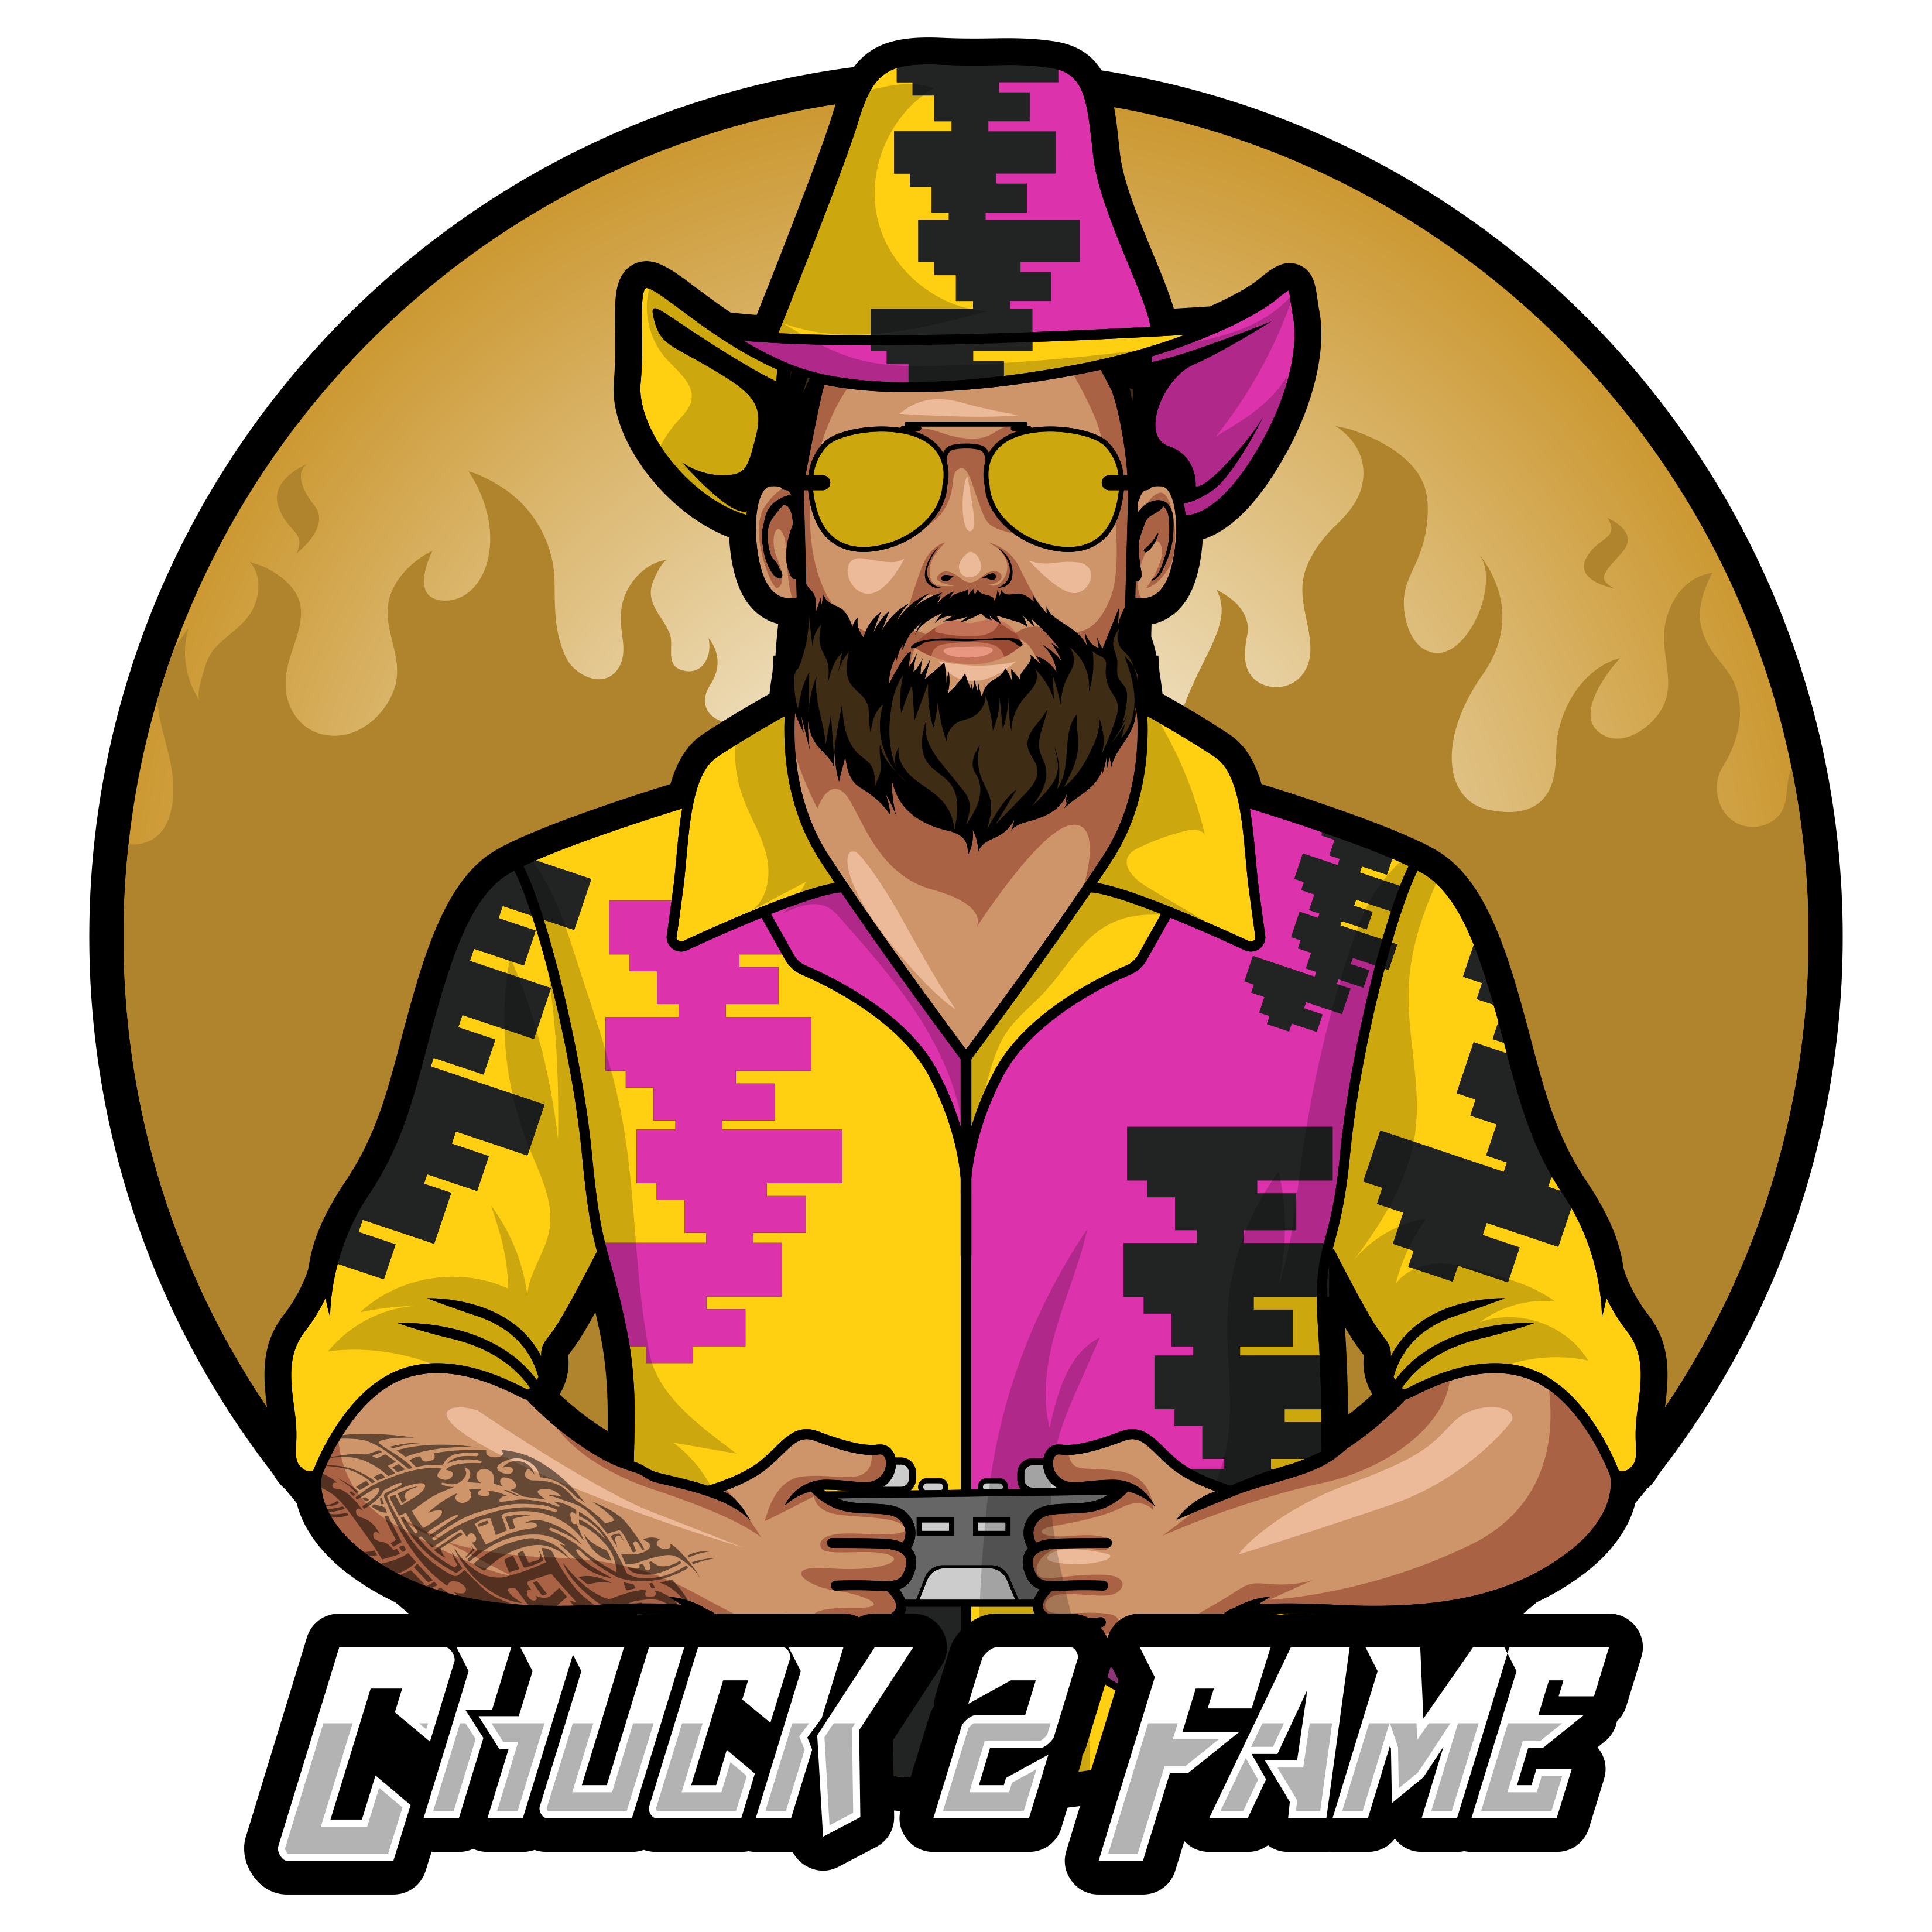 Chuck to frame logo